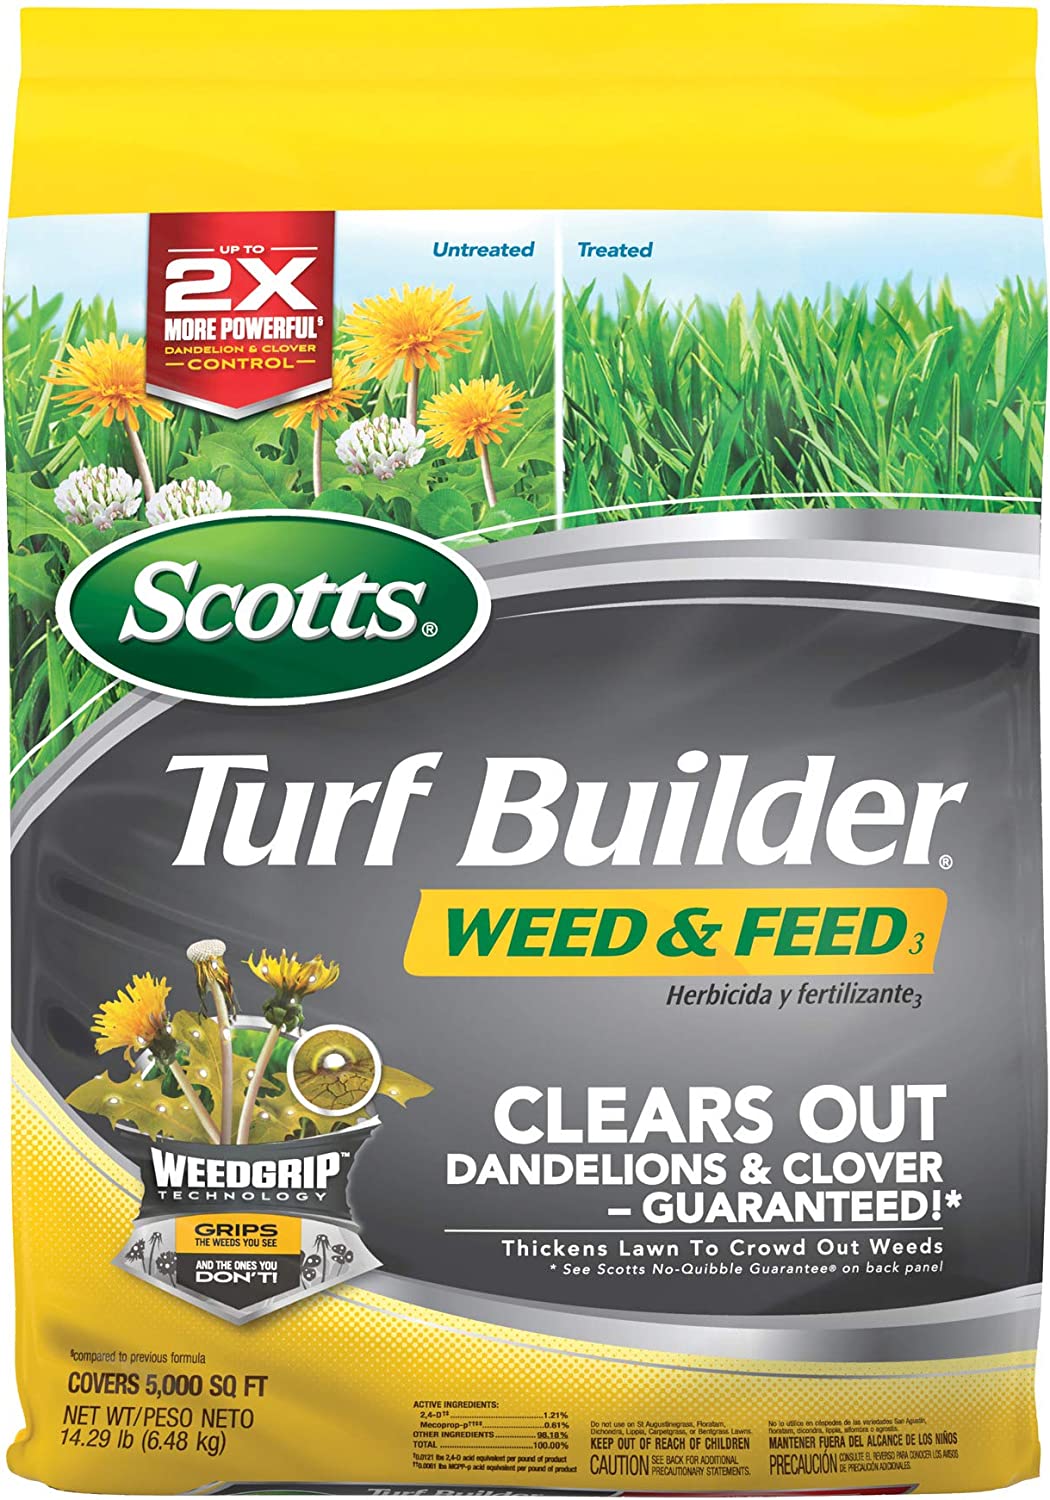 Scotts Turf Builder Weed & Feed3, Weed Killer Plus [...]